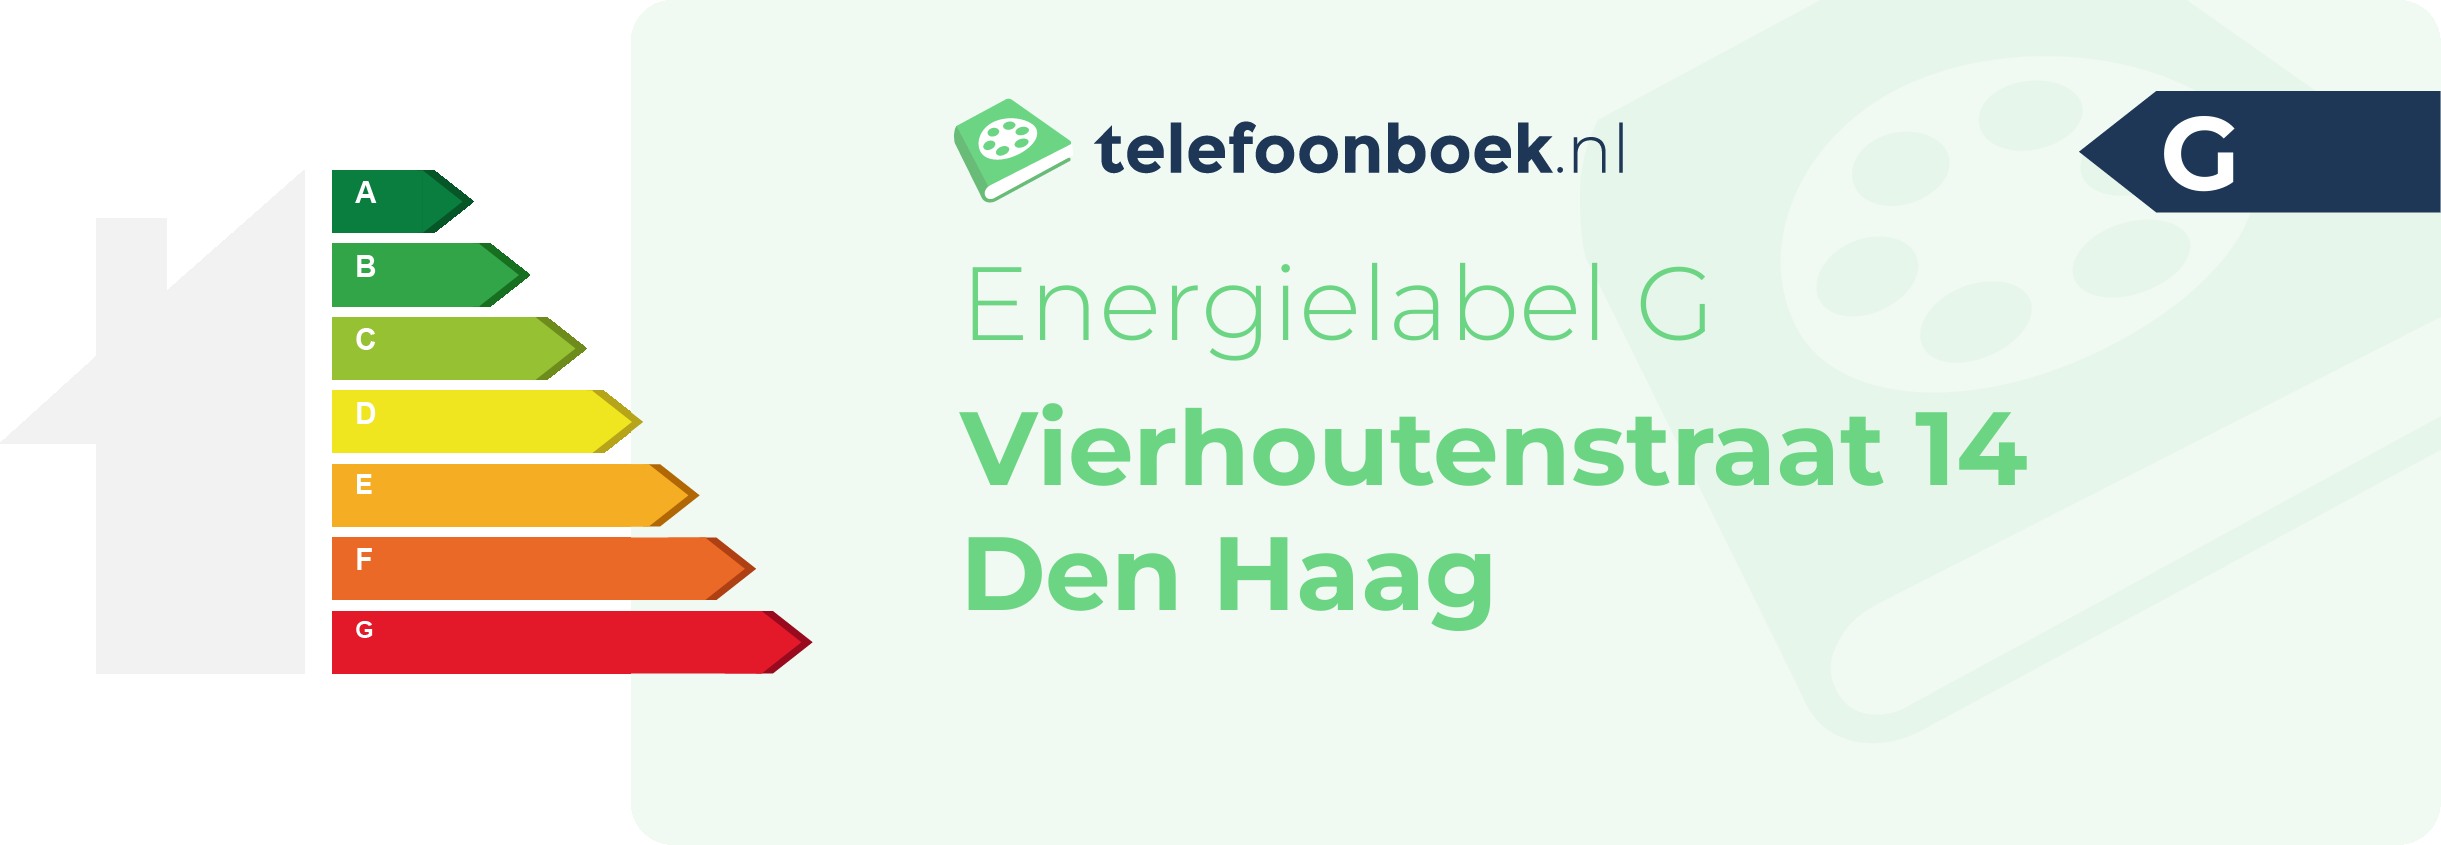 Energielabel Vierhoutenstraat 14 Den Haag